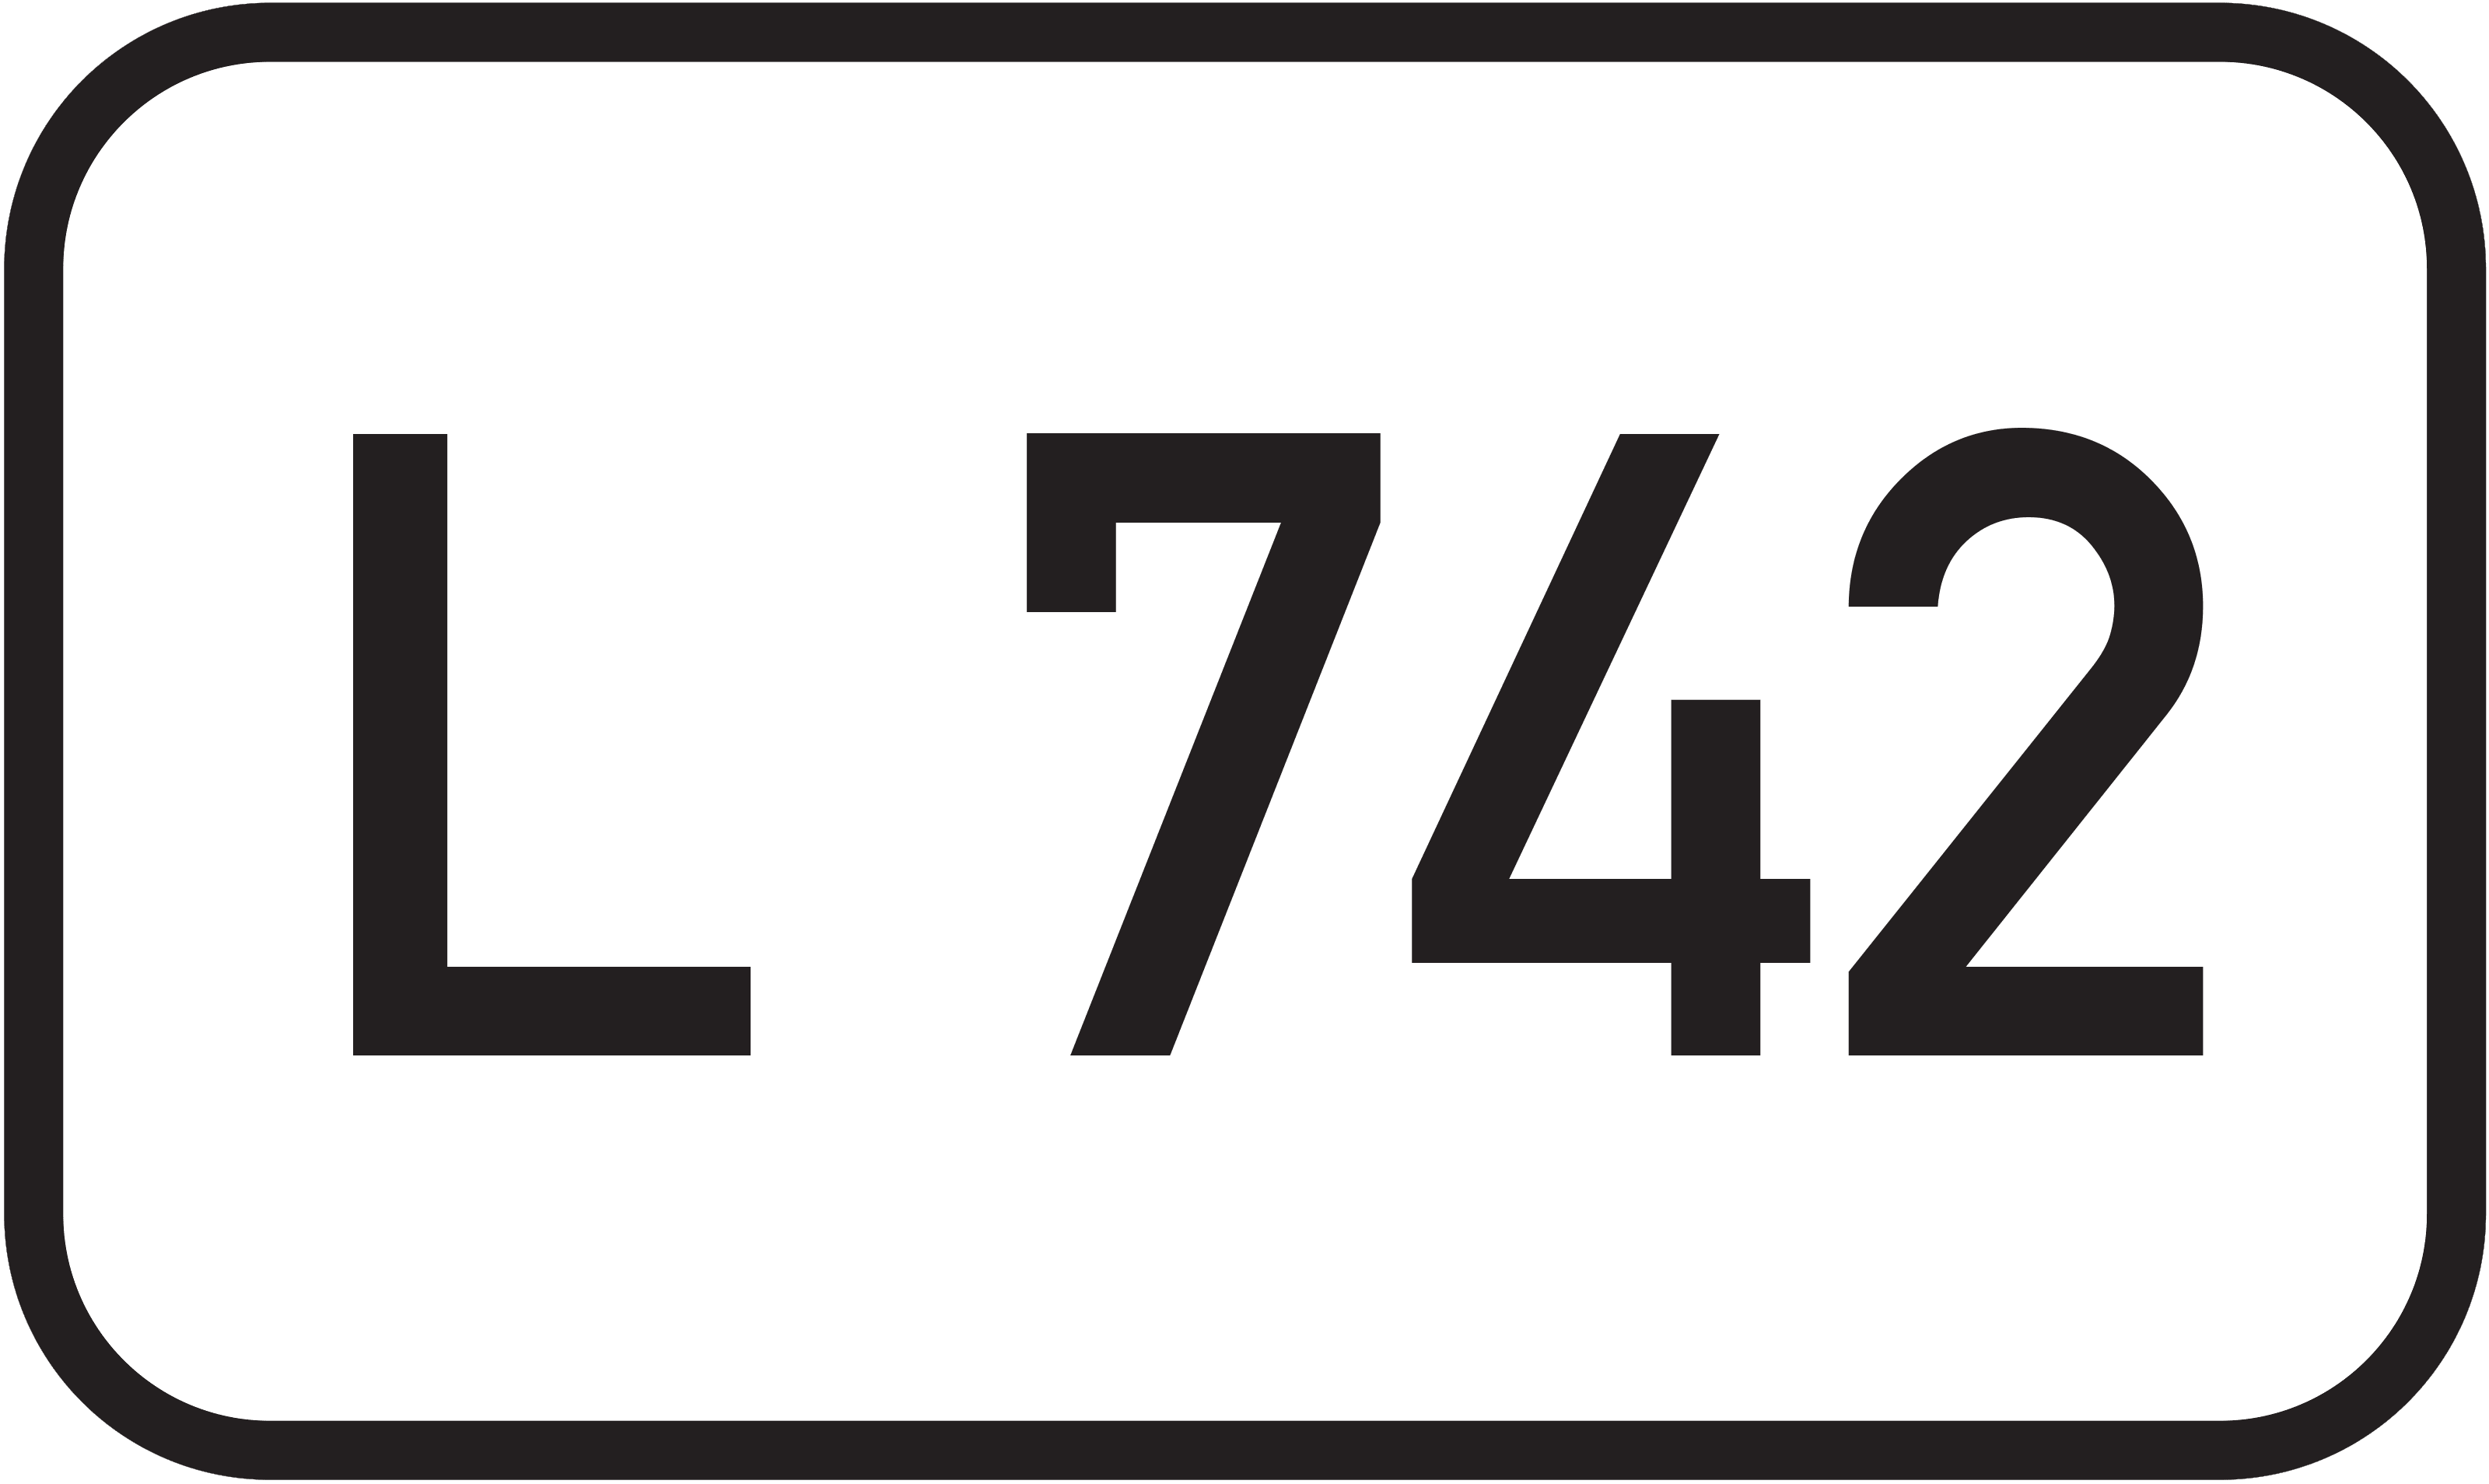 Landesstraße L 742